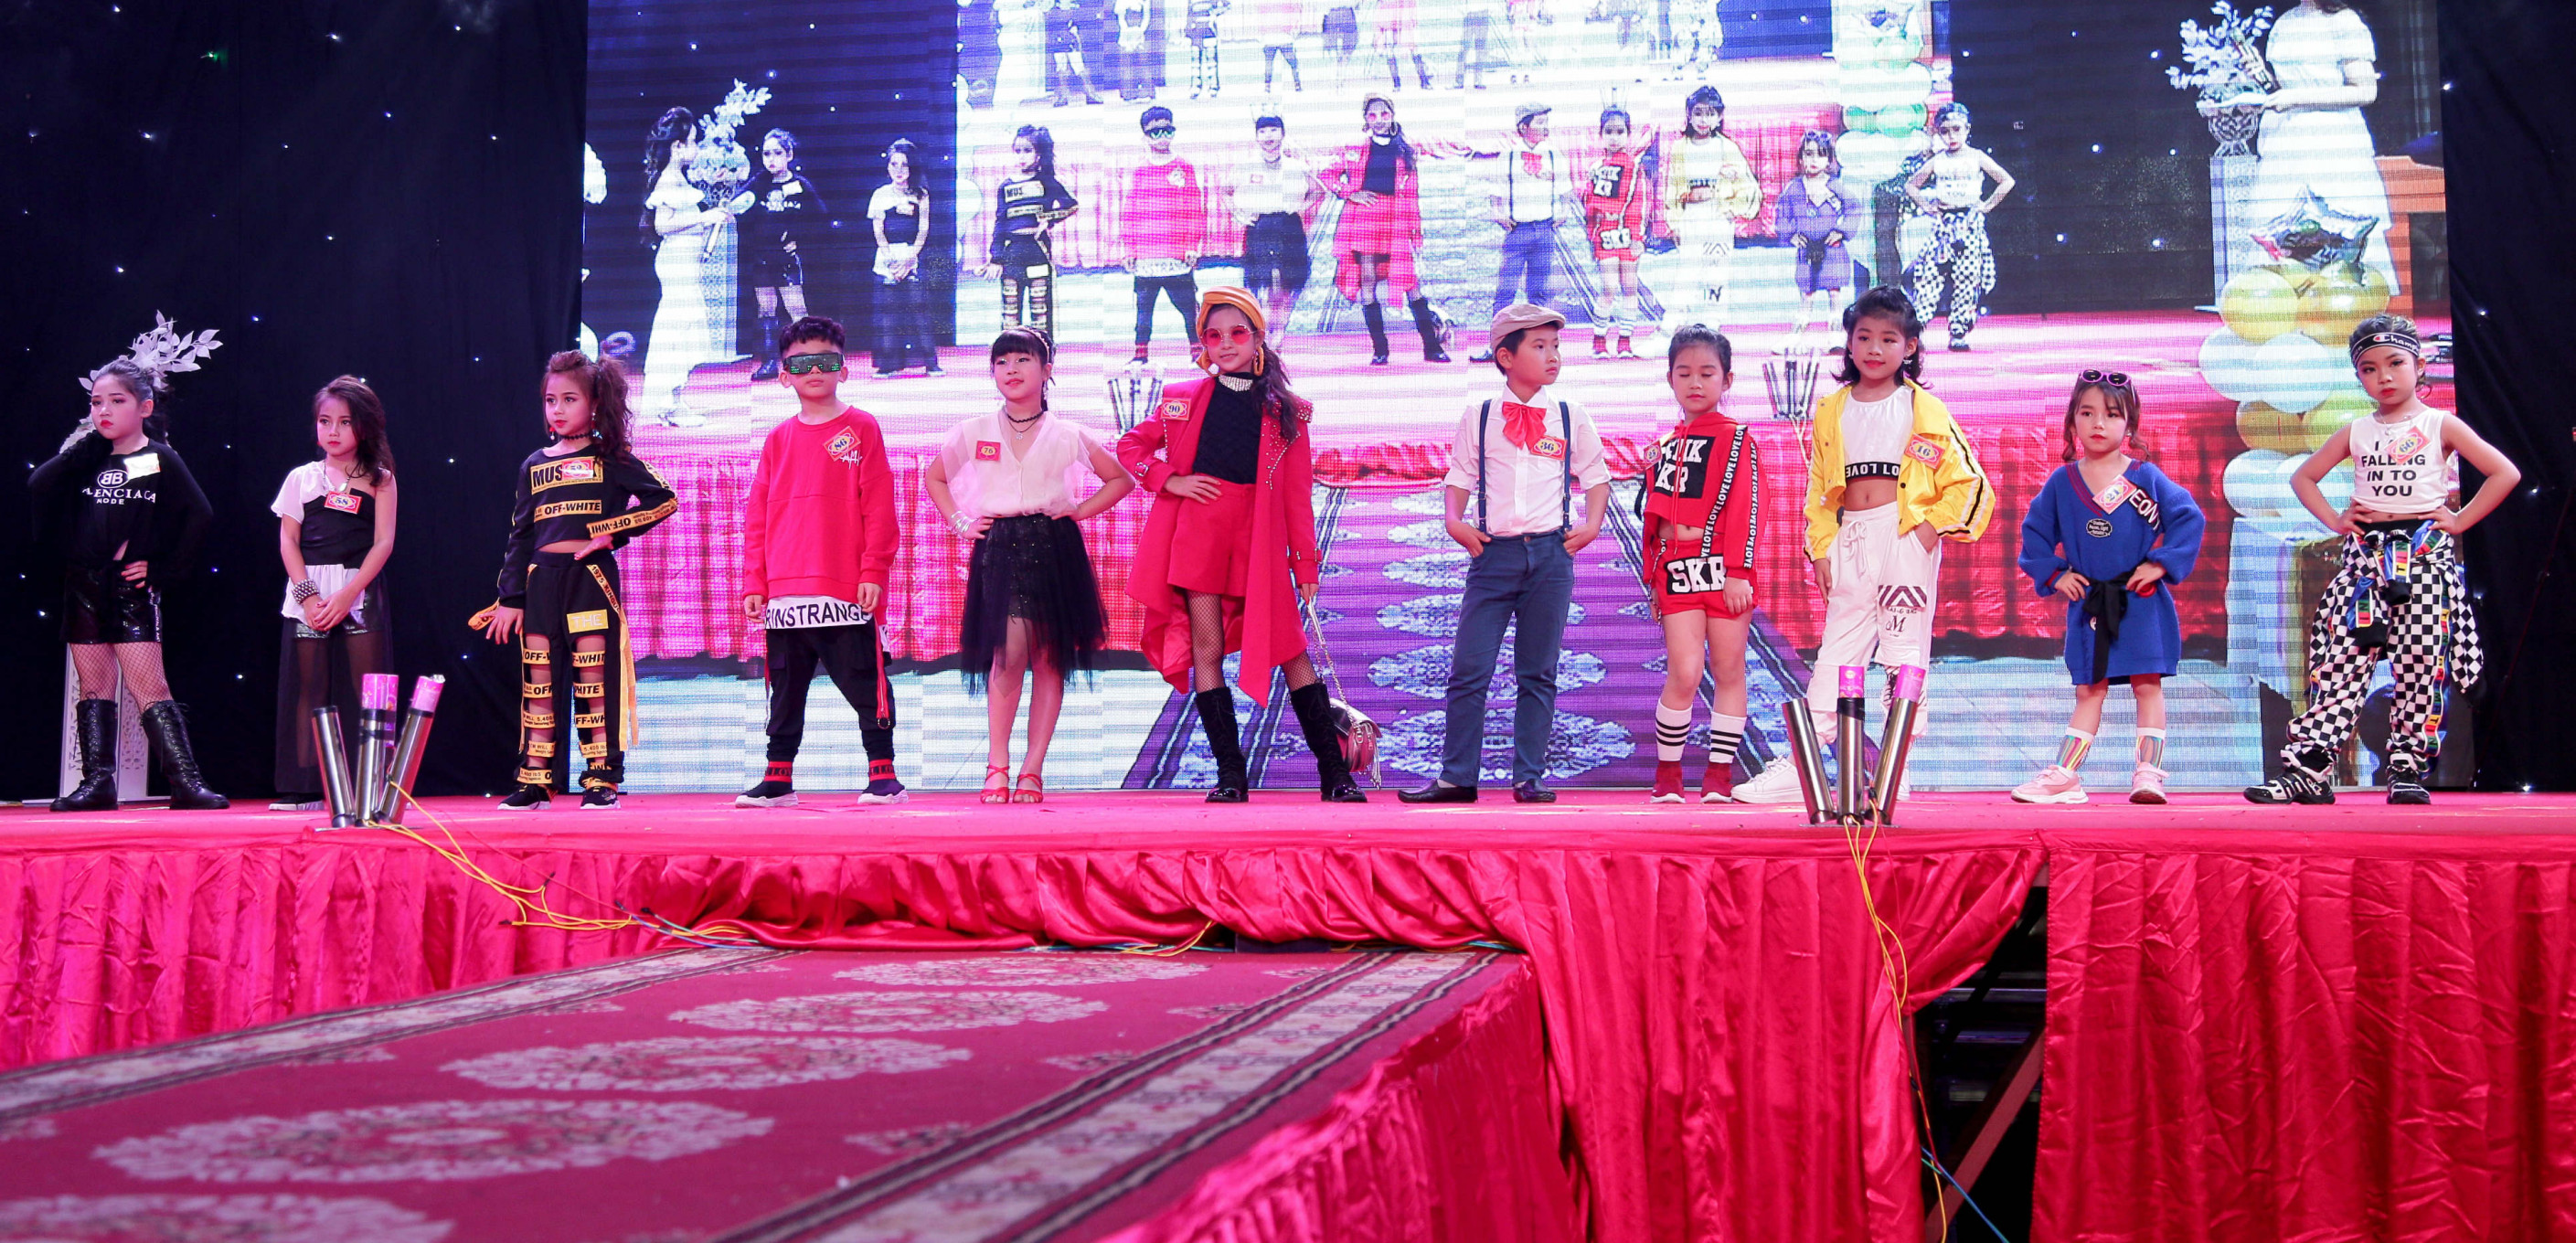 Cuộc thi Tìm kiếm tài năng Sunny Talent Kids 2019 vừa được tổ chức tại TP Ninh Bình với sự tham gia của các em nhỏ tuổi từ 4 đến 15 ở nhiều tỉnh thành trên cả nước. 